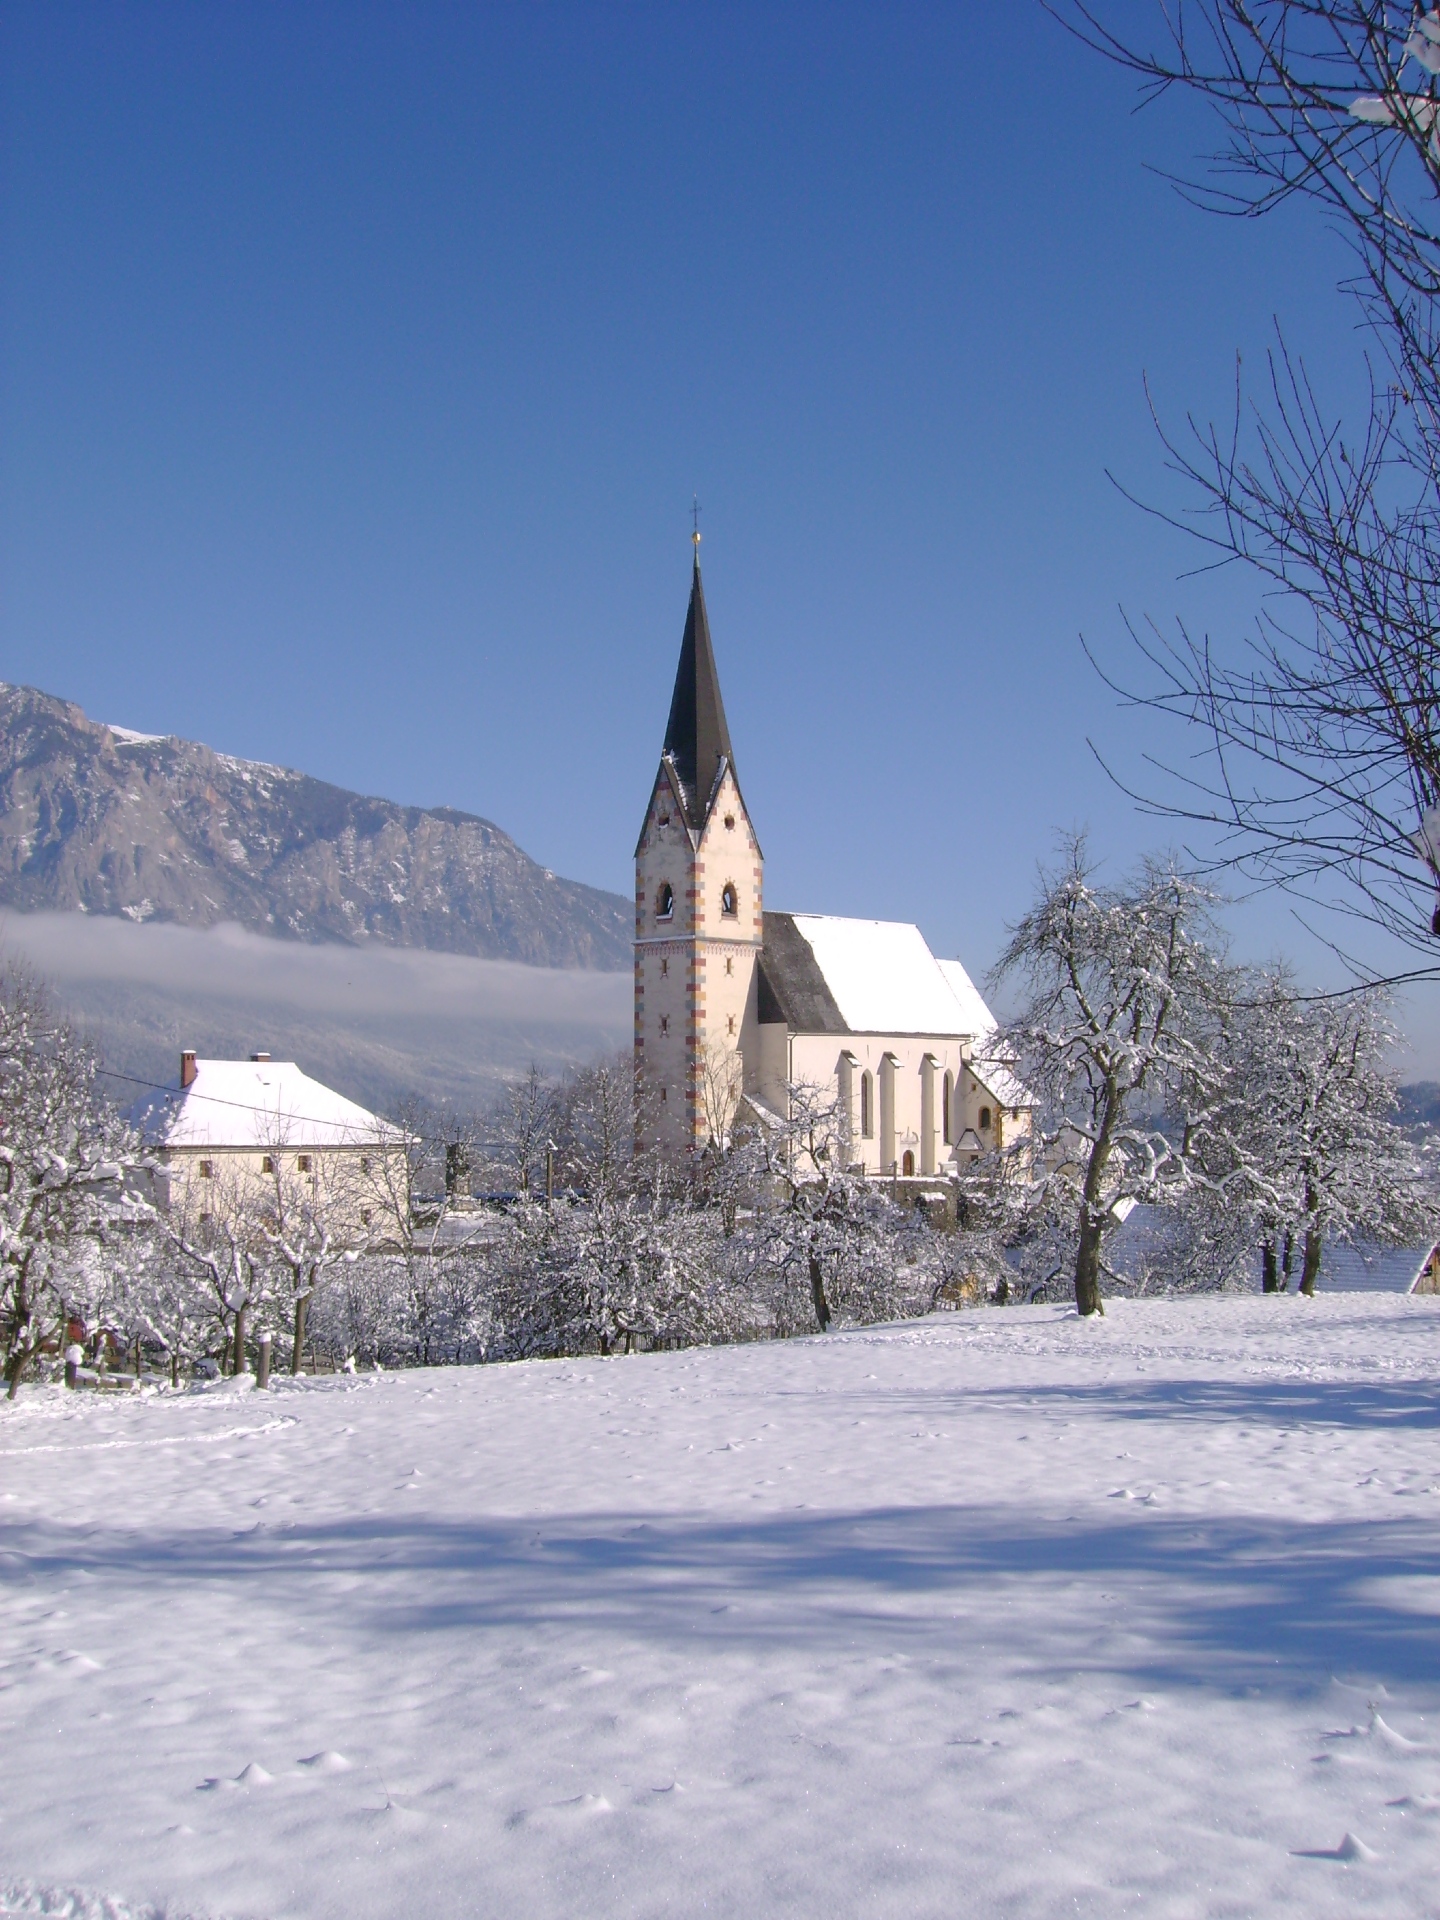 Blick auf die verschneite Filialkirche Mariae Name in der Ortschaft Göriach